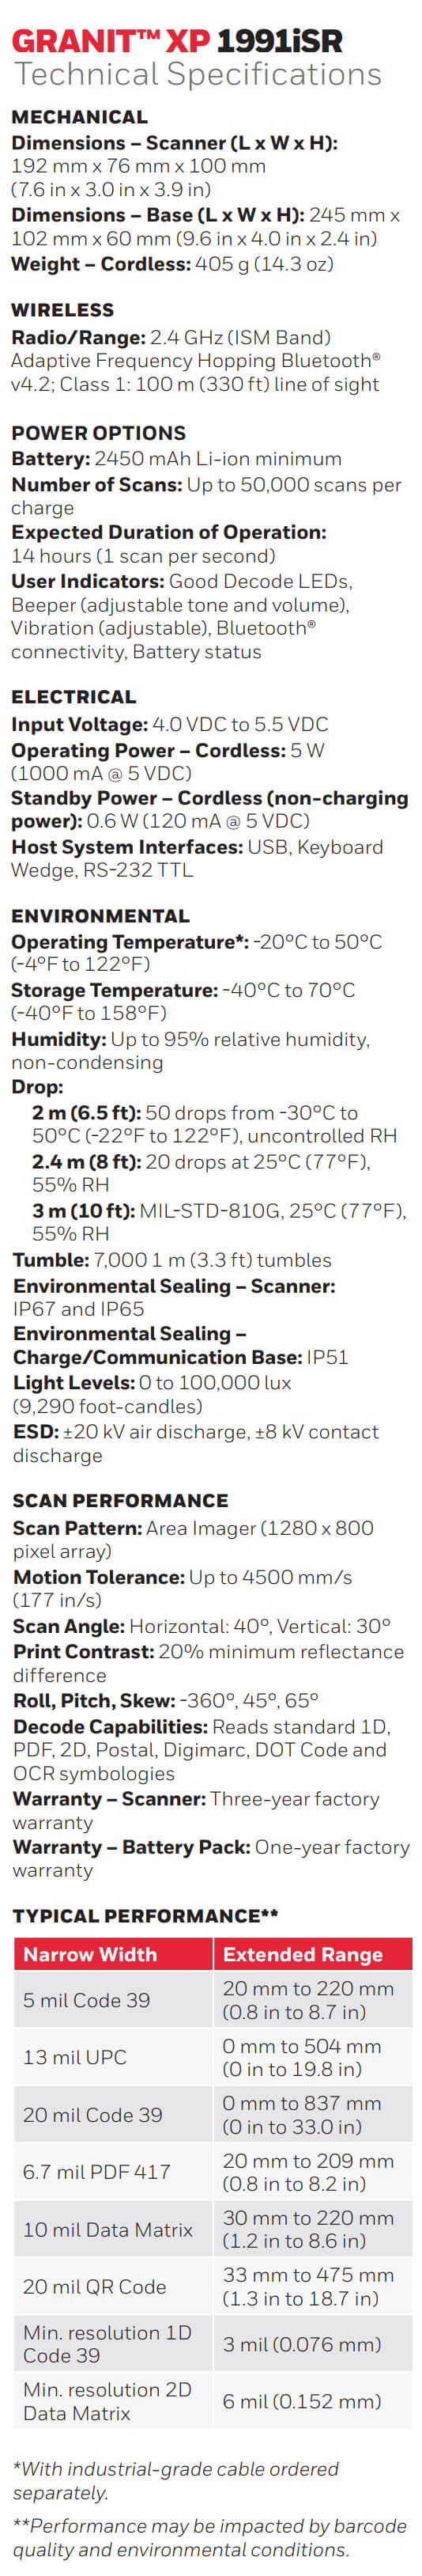 Honeywell Granit 1991iSR Ultra-Rugged Standard Range Scanner data sheet